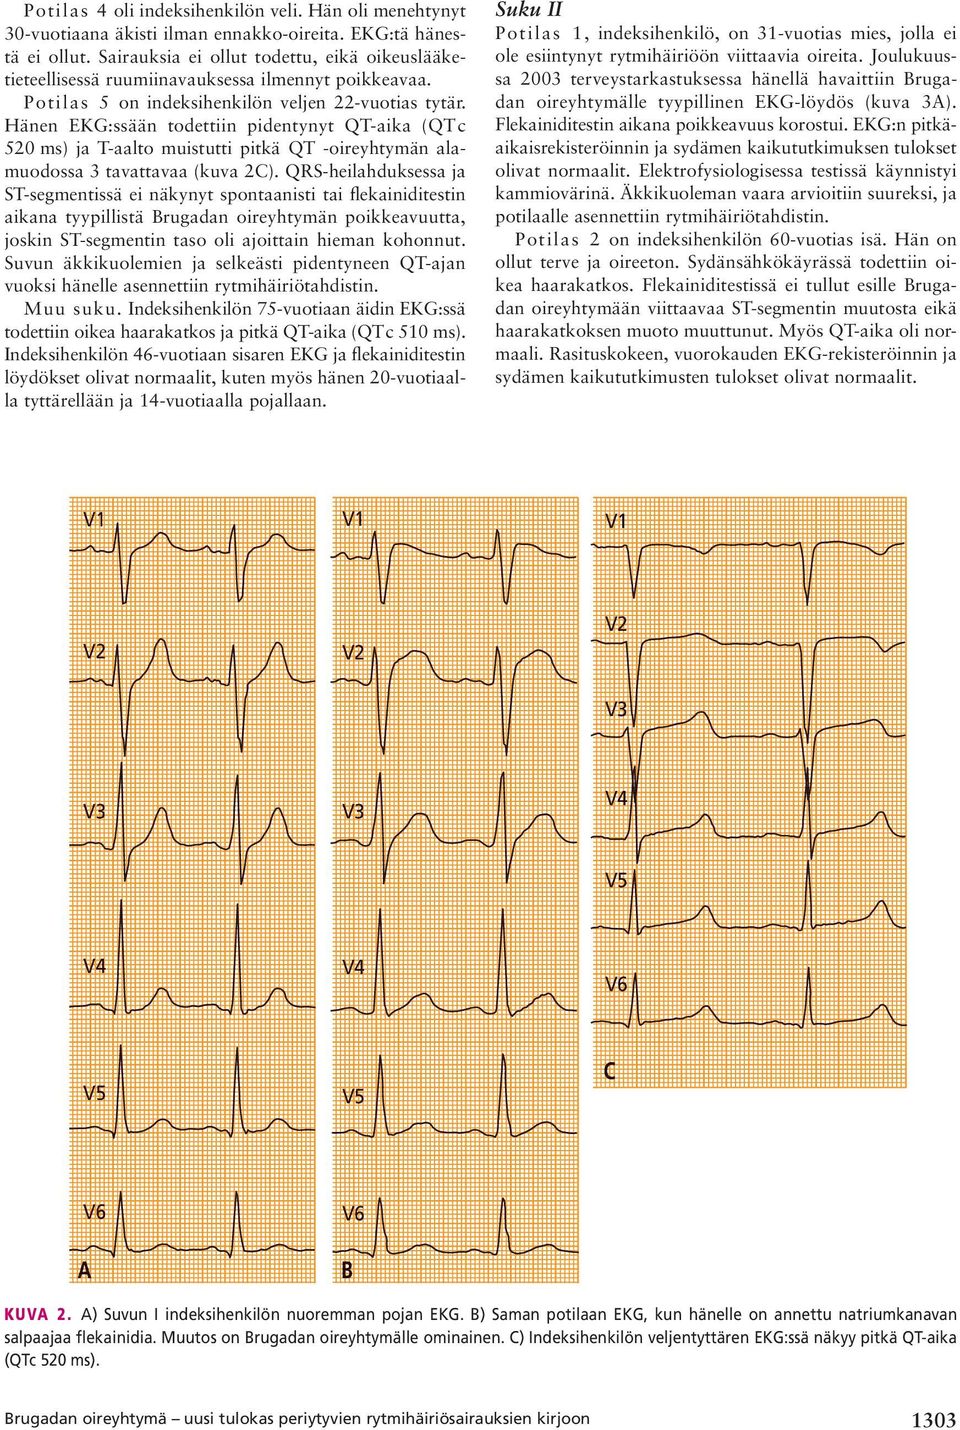 Hänen EKG:ssään todettiin pidentynyt QT-aika (QTc 520 ms) ja T-aalto muistutti pitkä QT -oireyhtymän alamuodossa 3 tavattavaa (kuva 2C).